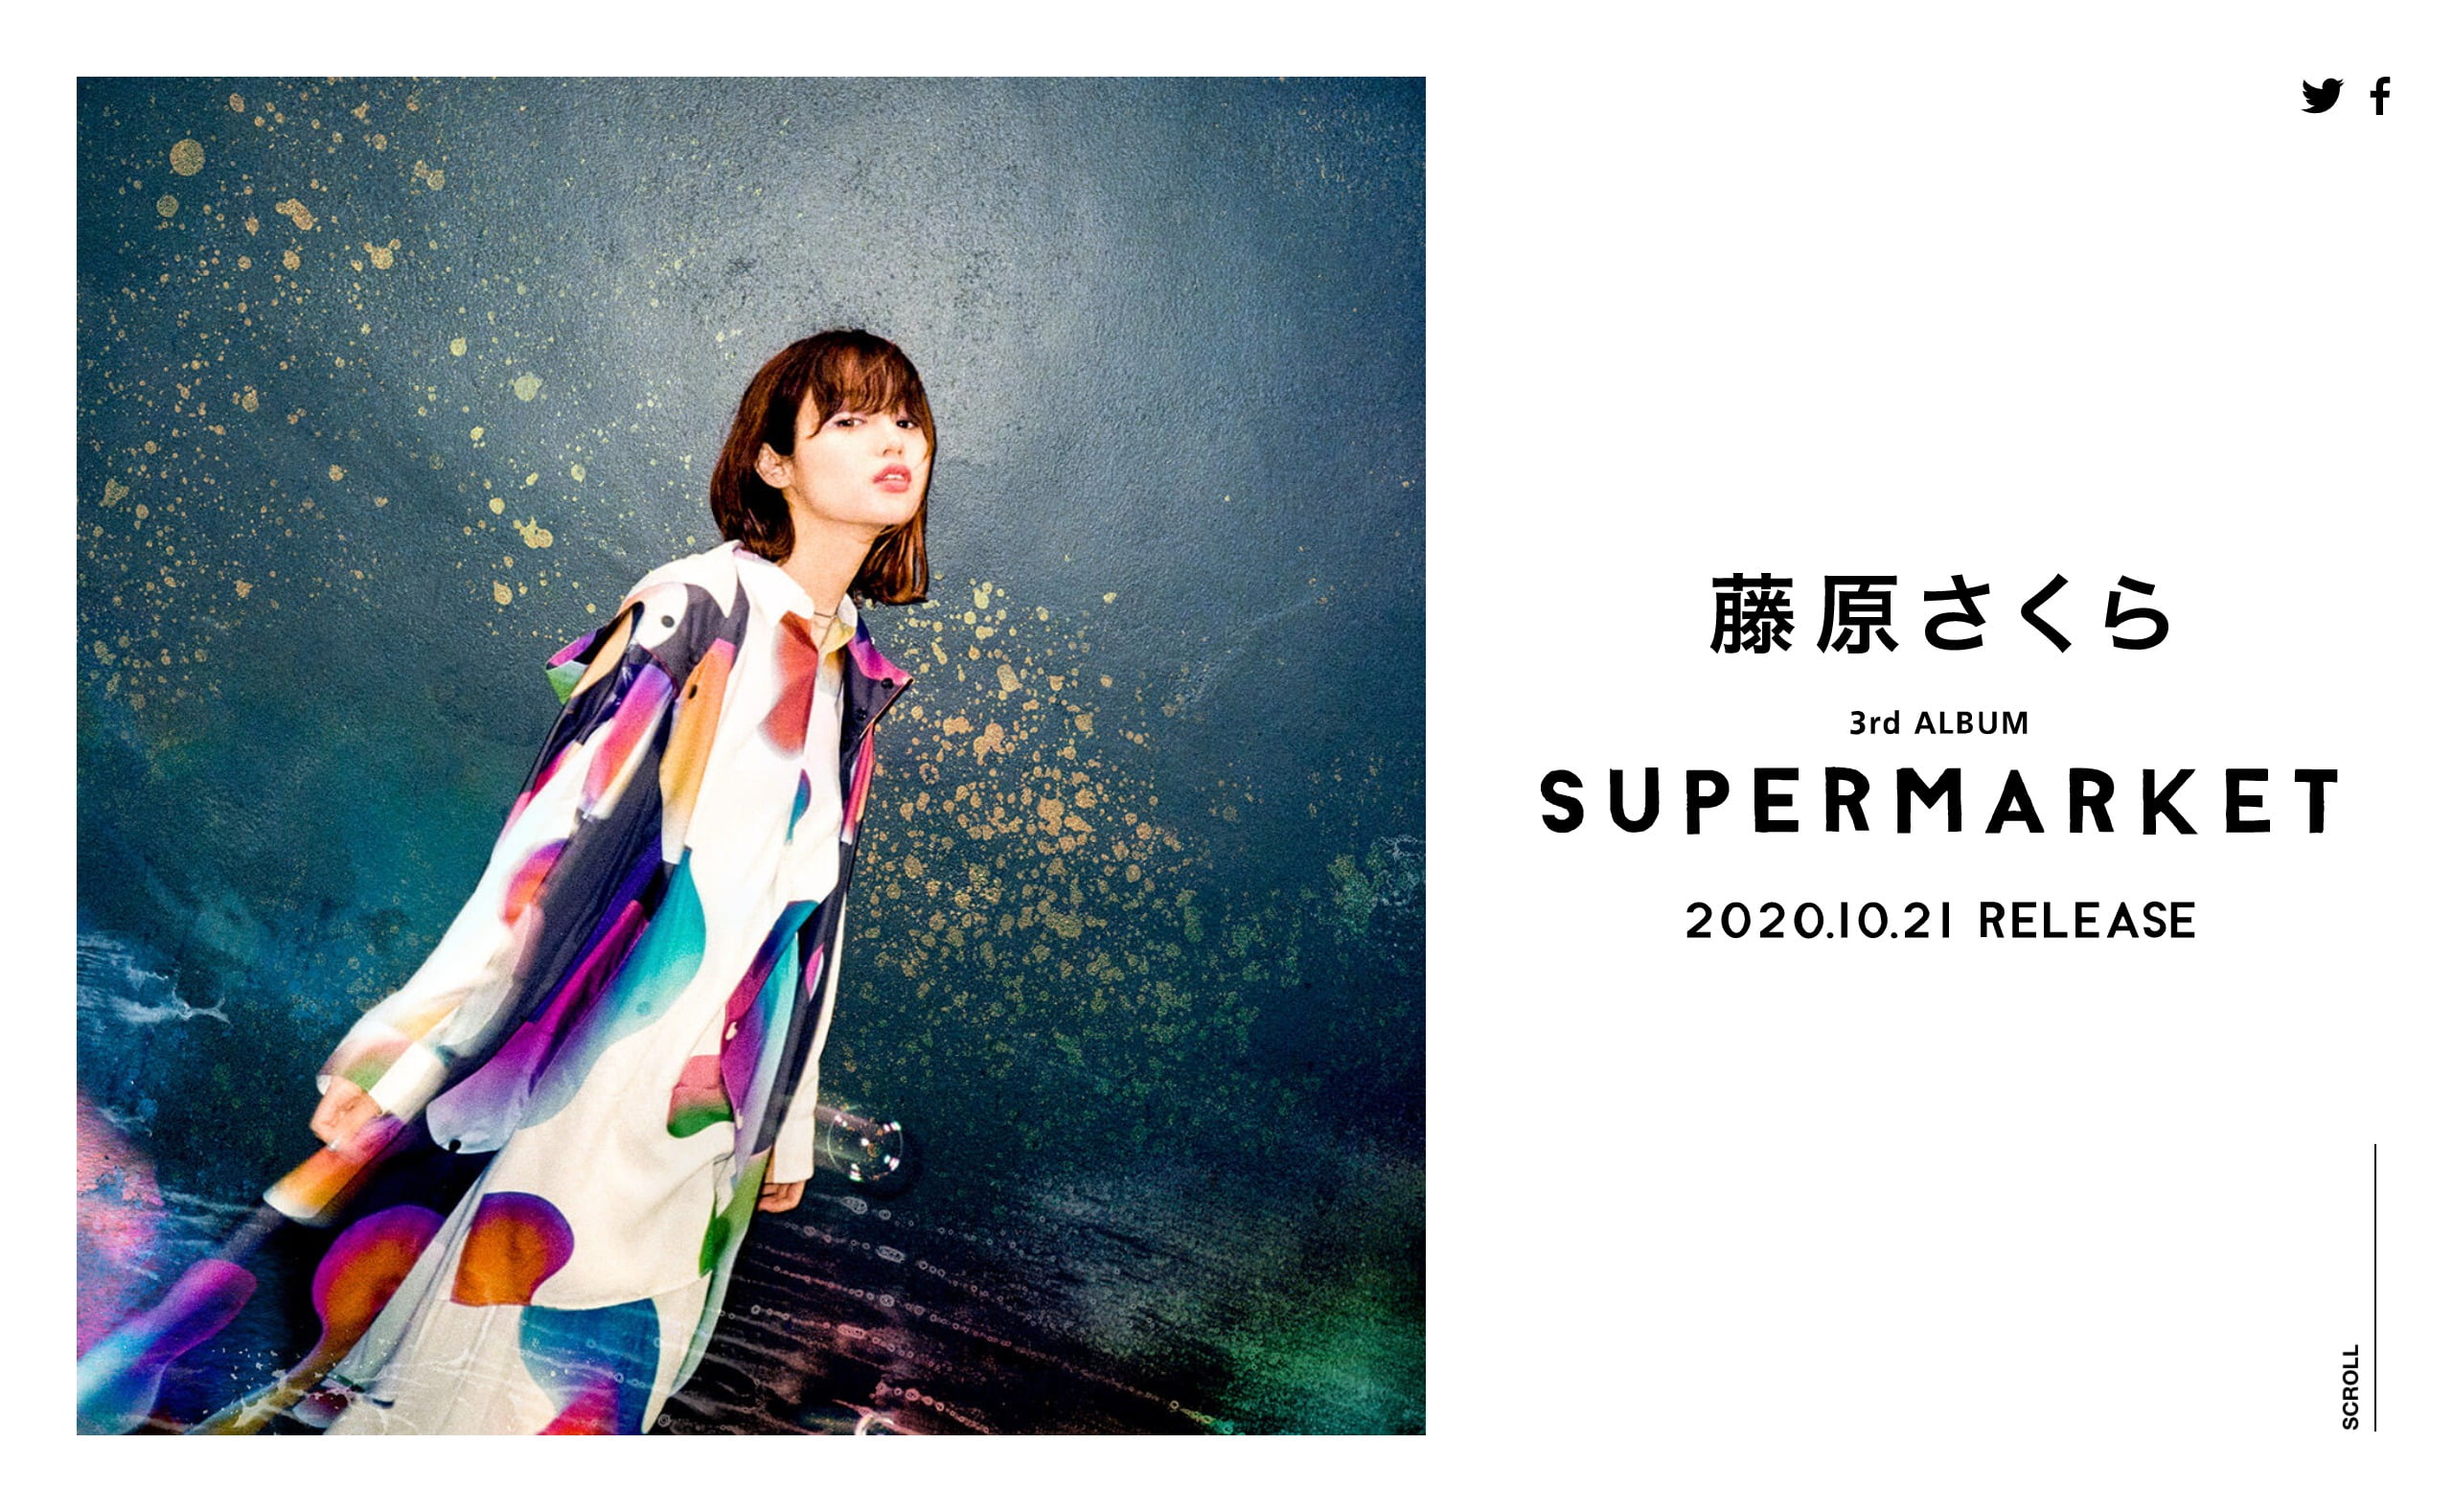 藤原さくら 3rd Album「SUPERMARKET」Special Site | MUSIC WEB CLIPS 